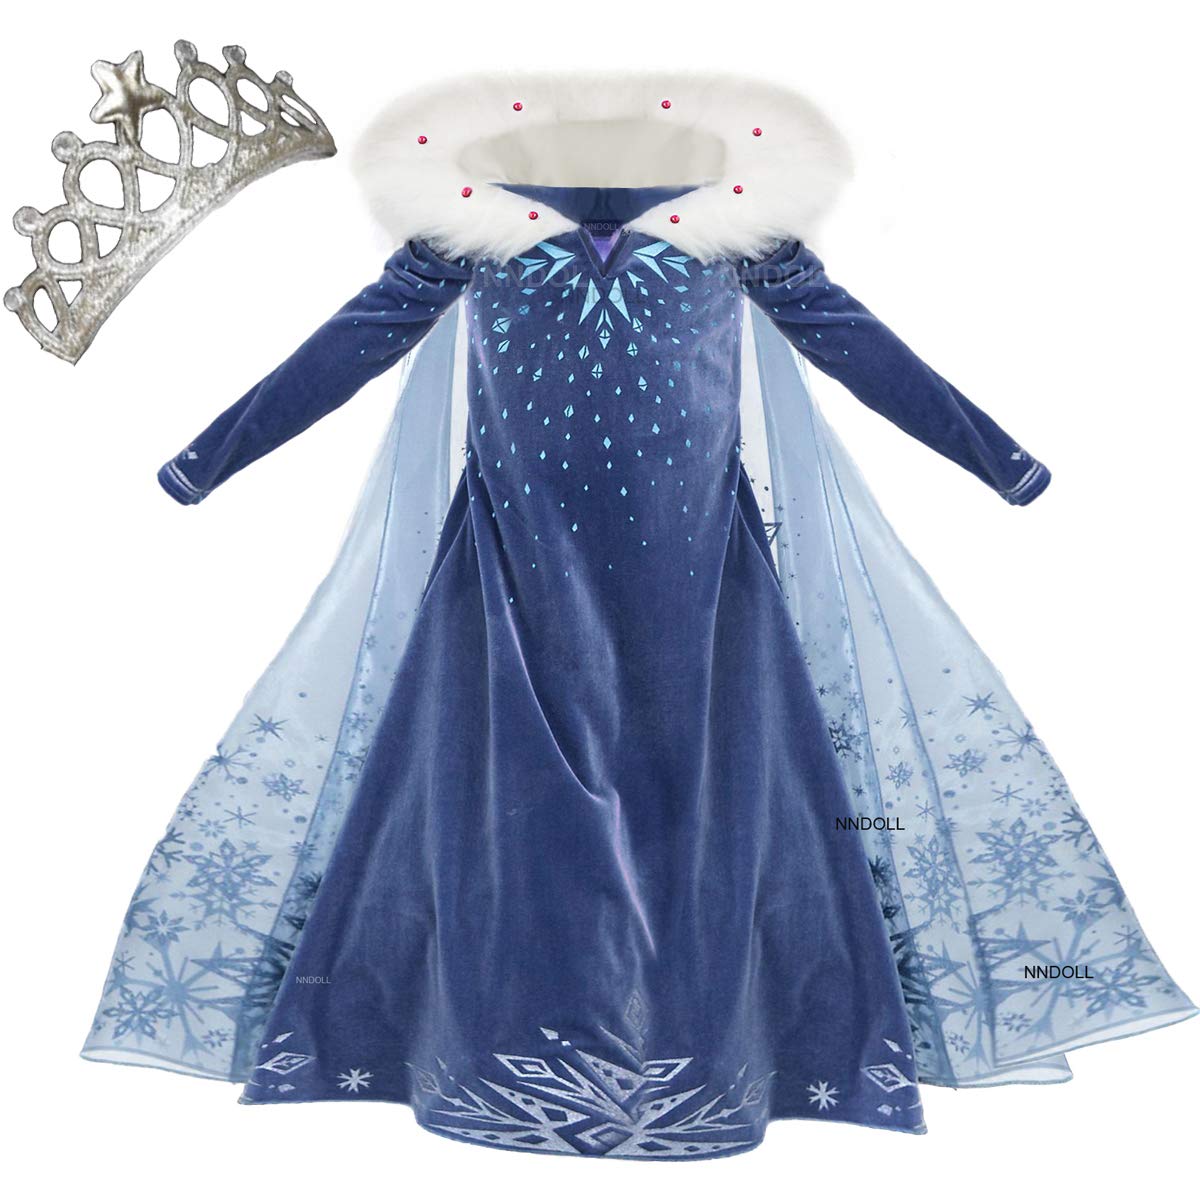 NNDOLL Princess Vestito Carnevale Bambina Abito Costume Bimbi Deluxe –